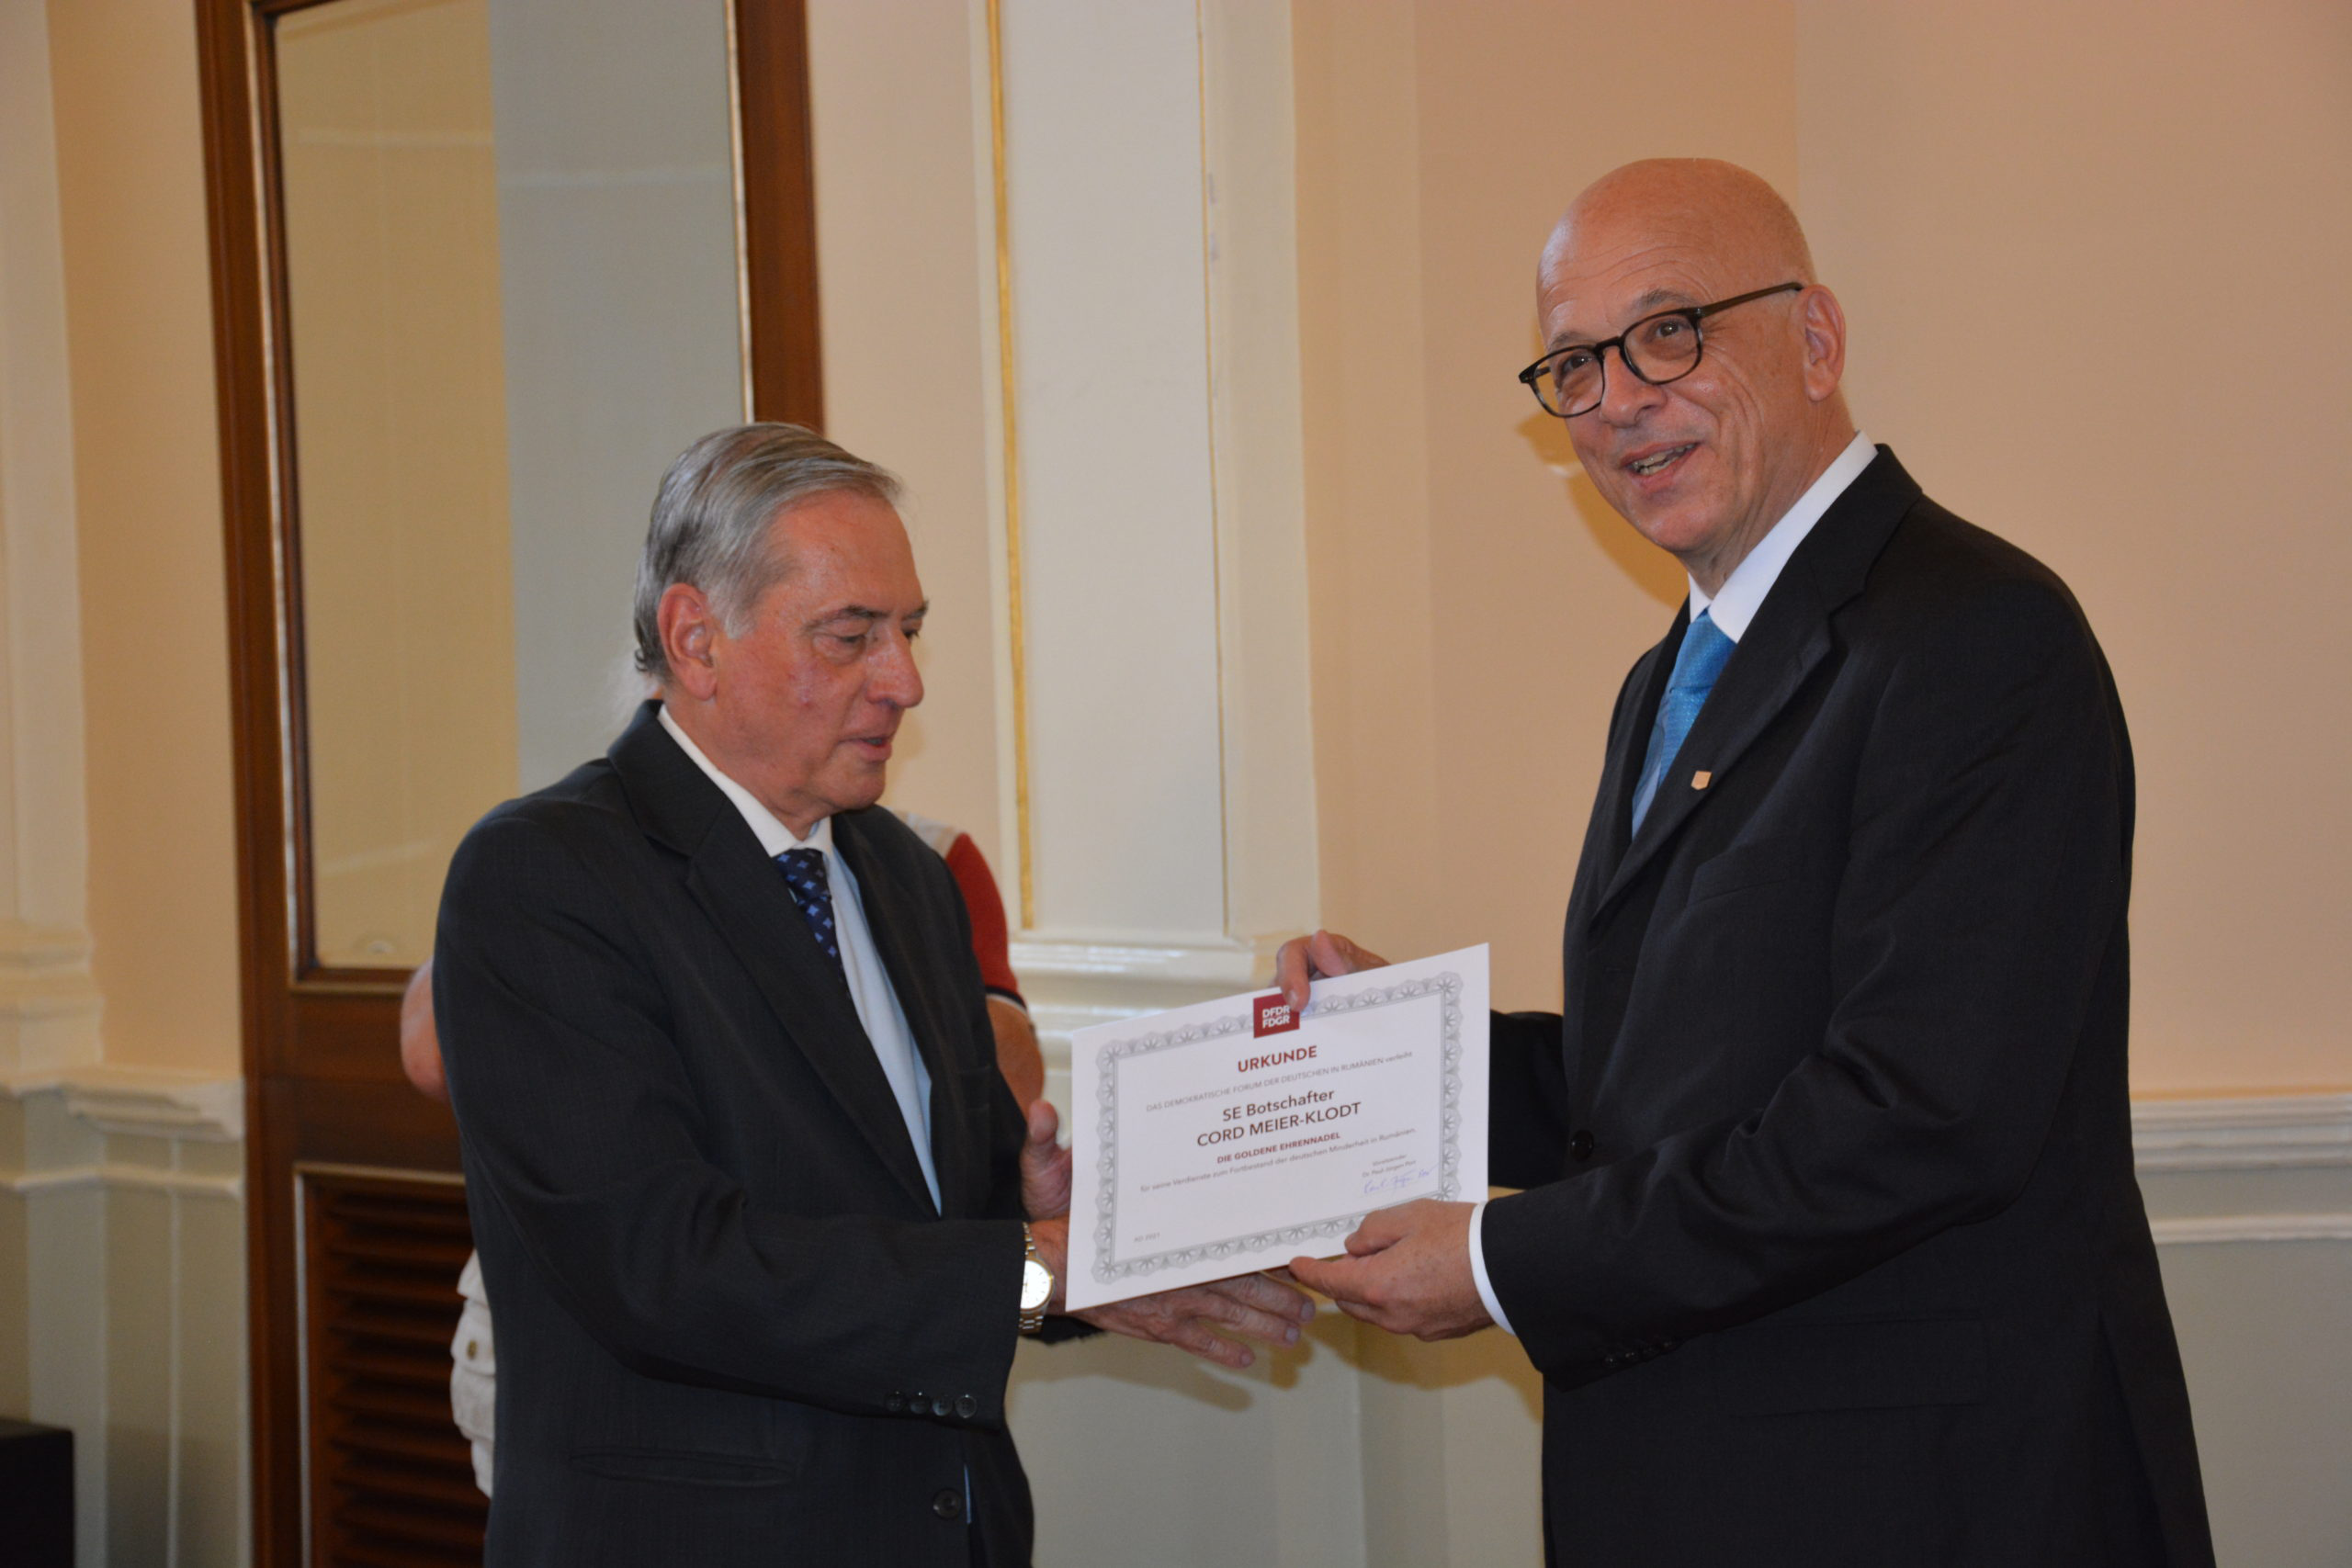 SE Cord Meier-Klodt, Botschafter der Bundesrepublik Deutschland in Rumänien, wurde die Ehrennadel in Gold des DFDR verliehen